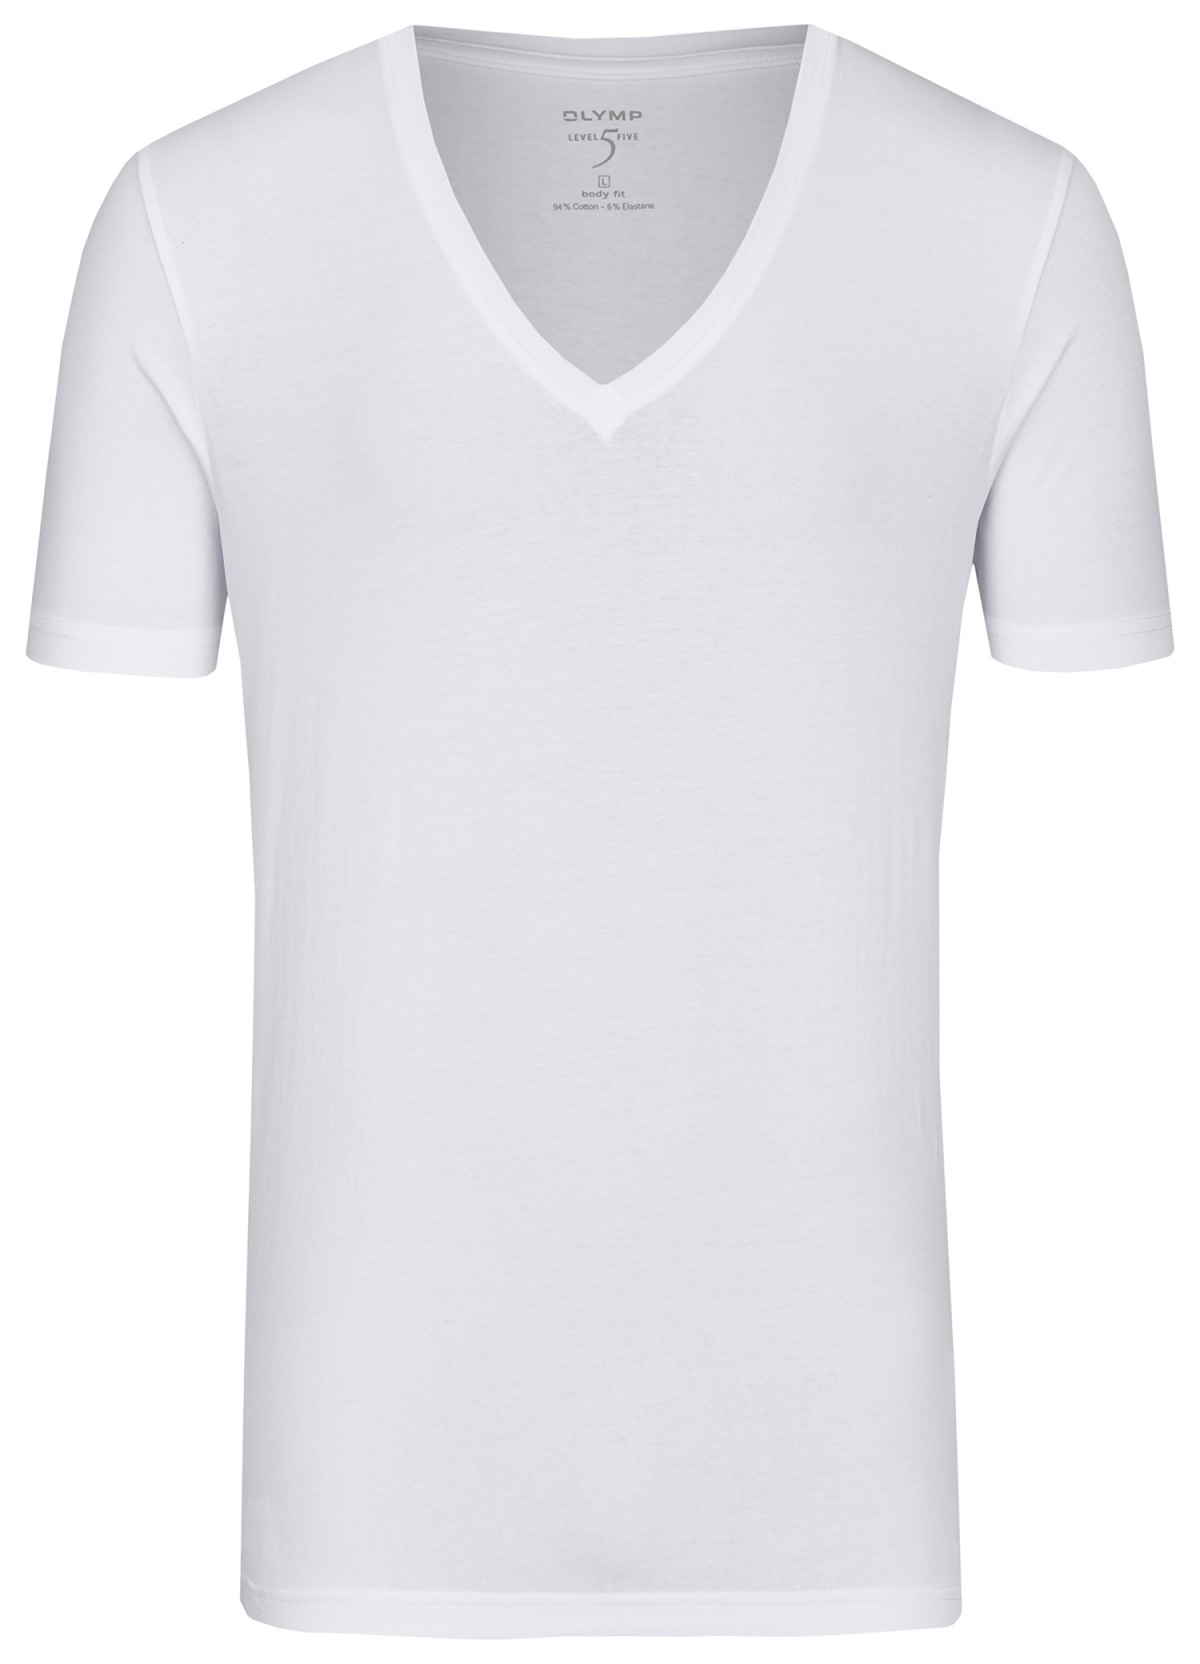 OLYMP Level tiefer V-Ausschnitt Fit weiß - Body Five T-Shirt - 